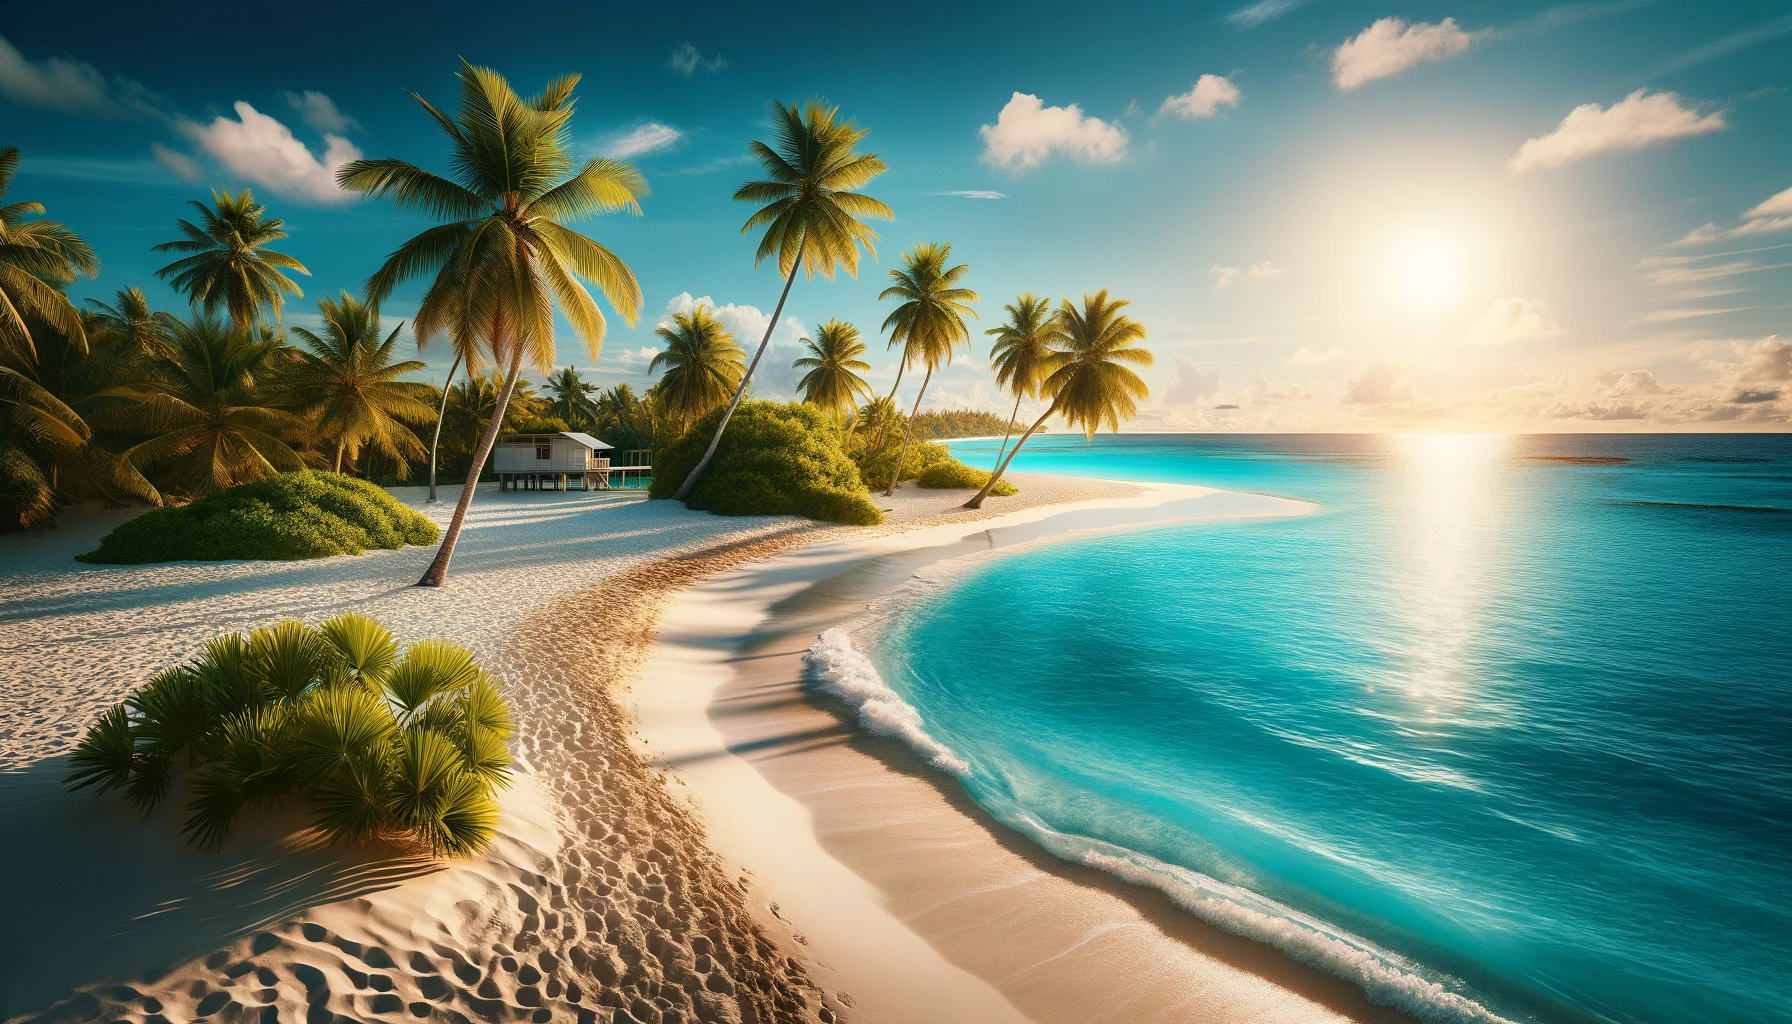 DALL·E Bild eines herrlichen weißen Sandstrandes mit wunderschönen Palmen und herrlichem blauen Meer